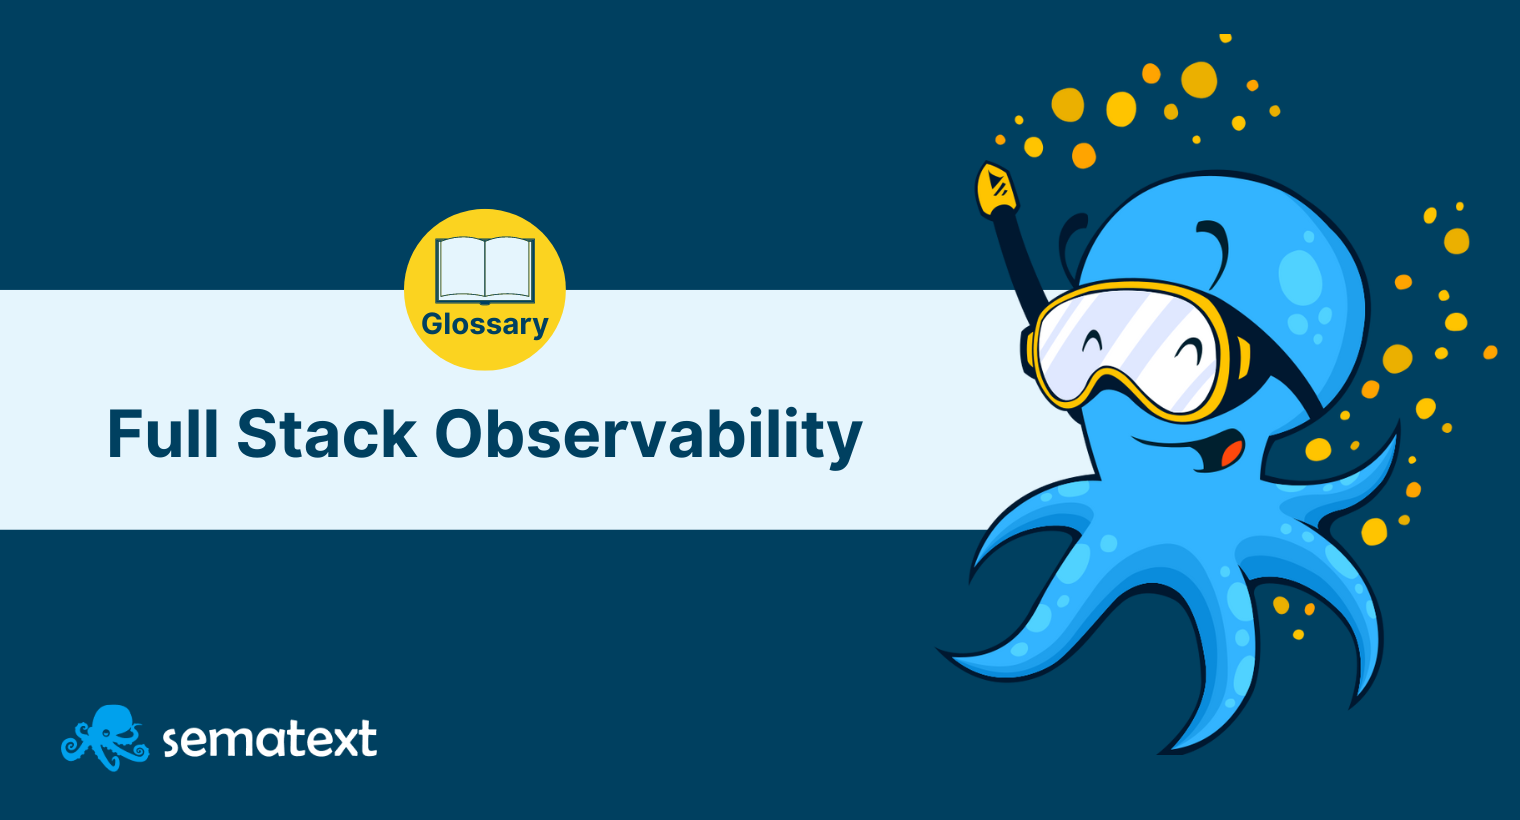 Full Stack Observability